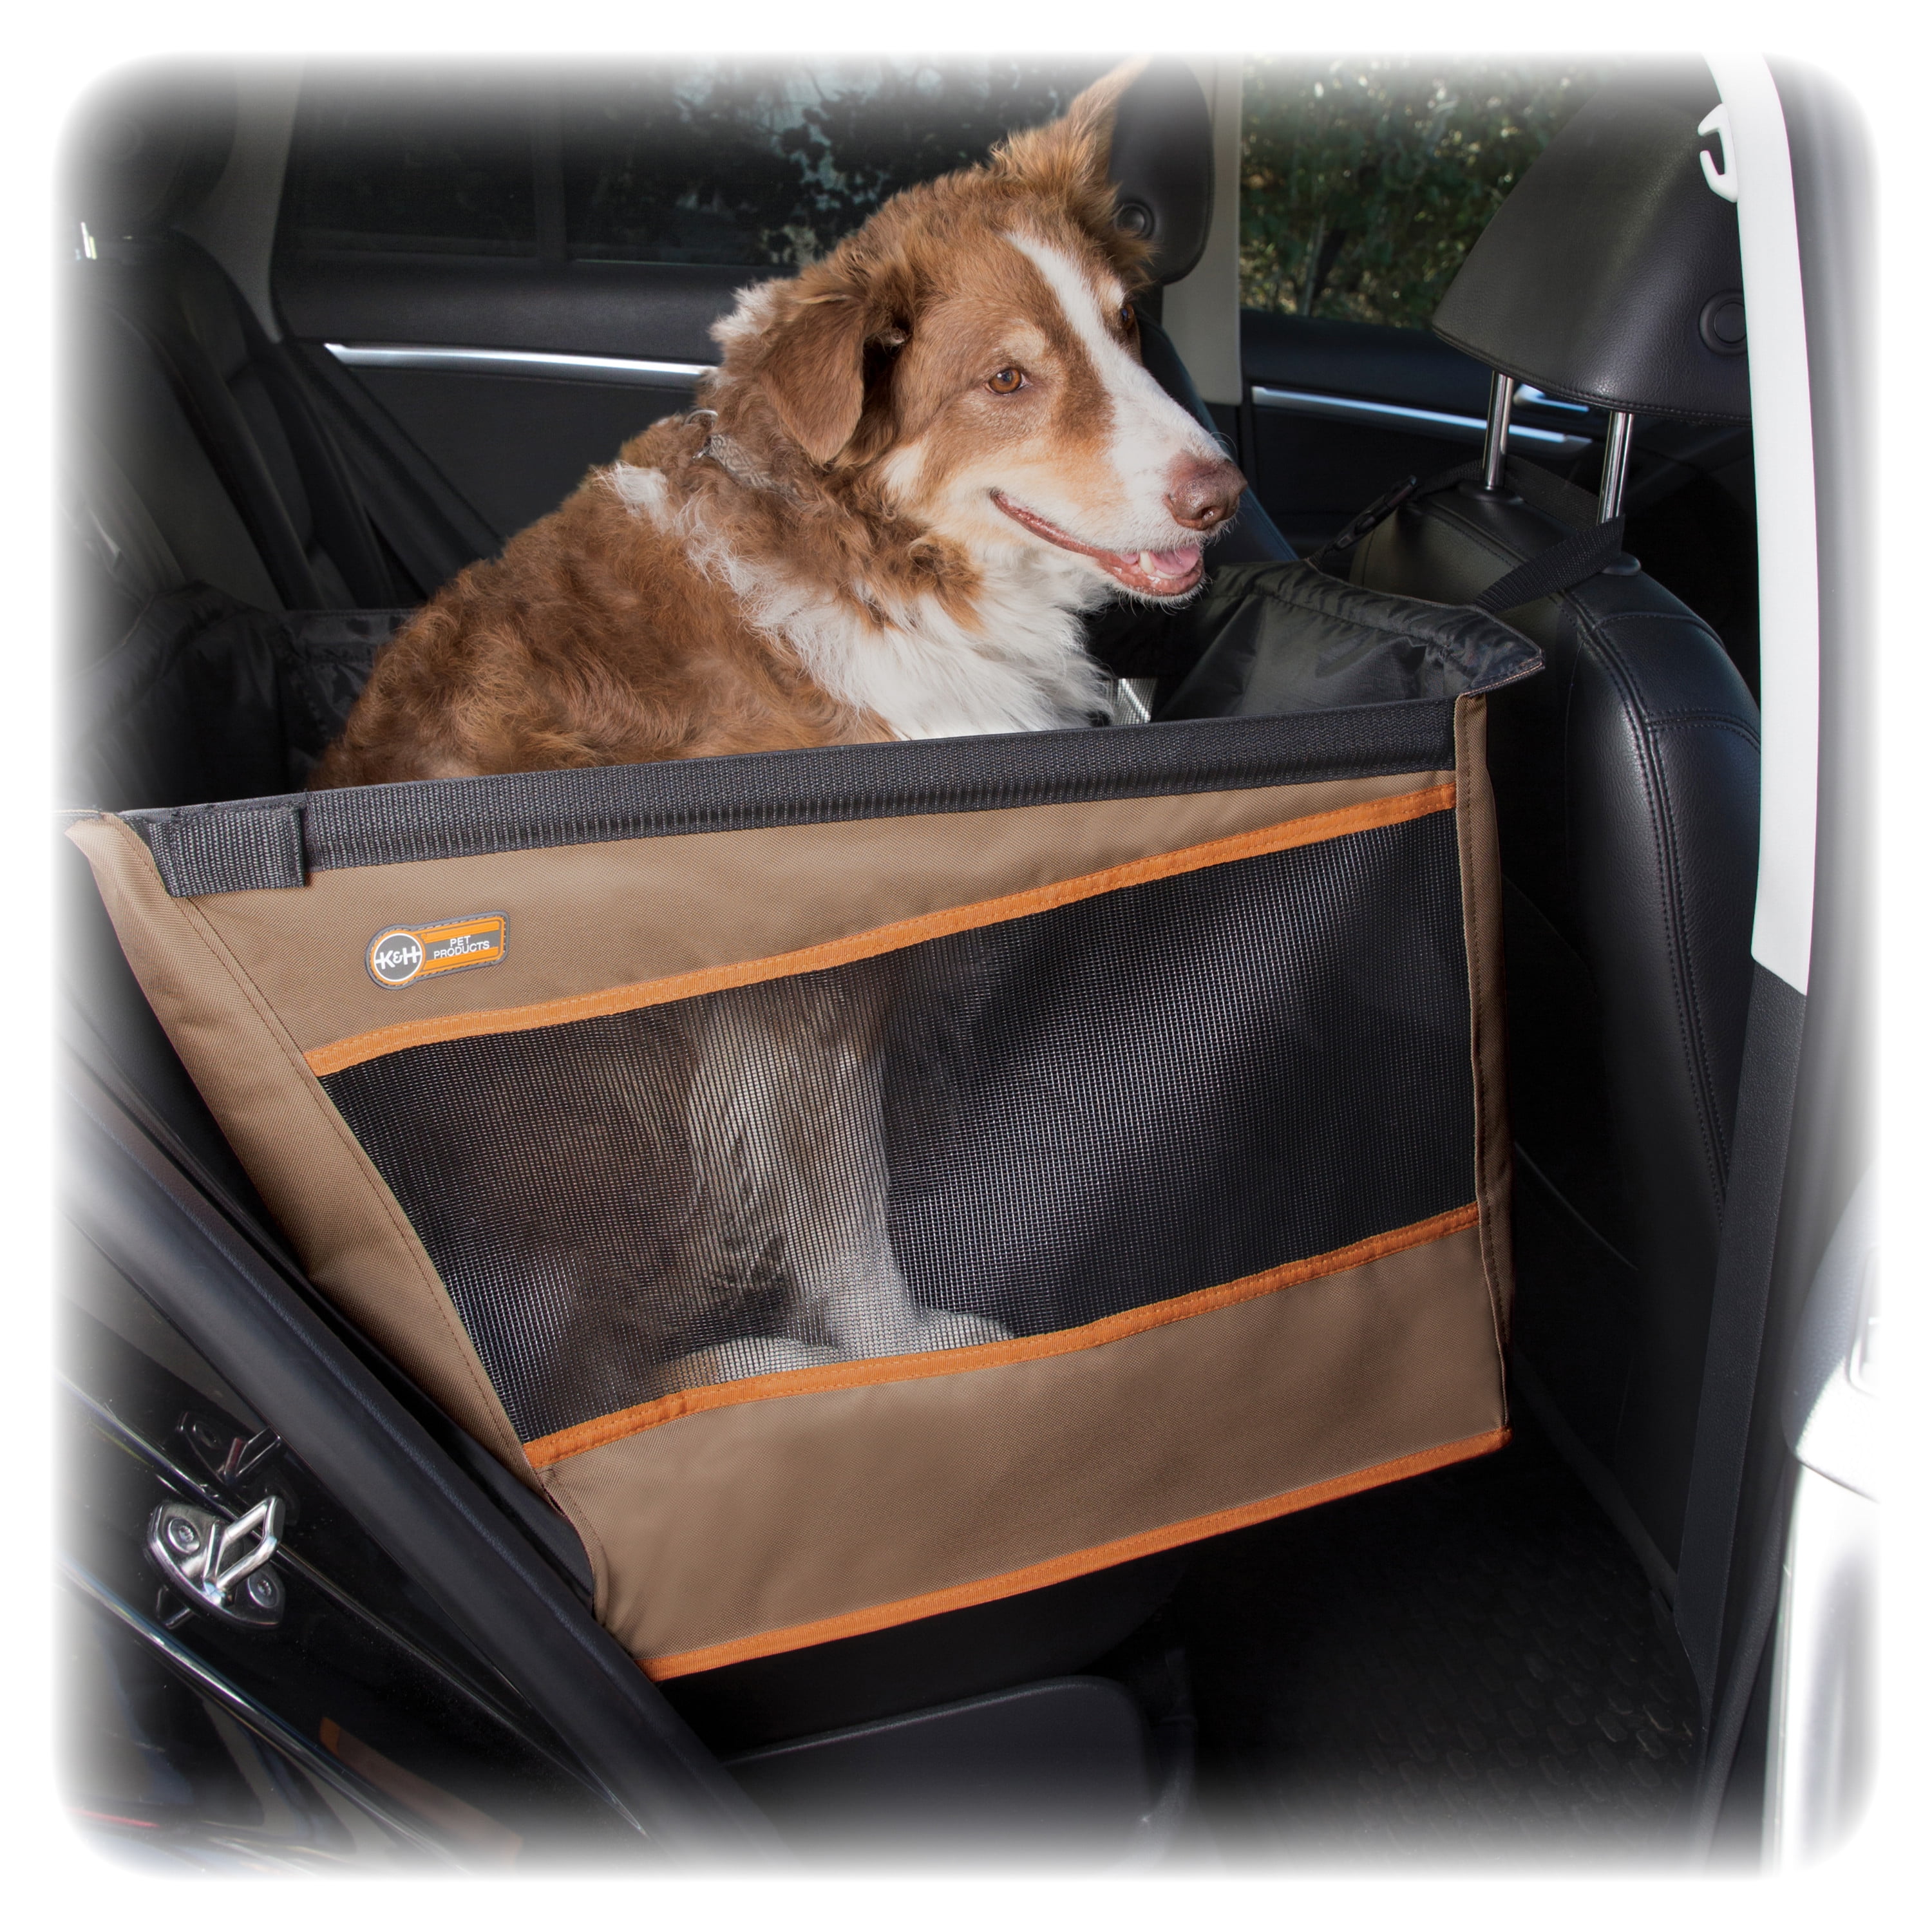 K H Pet Travel Safety Carrier - Large